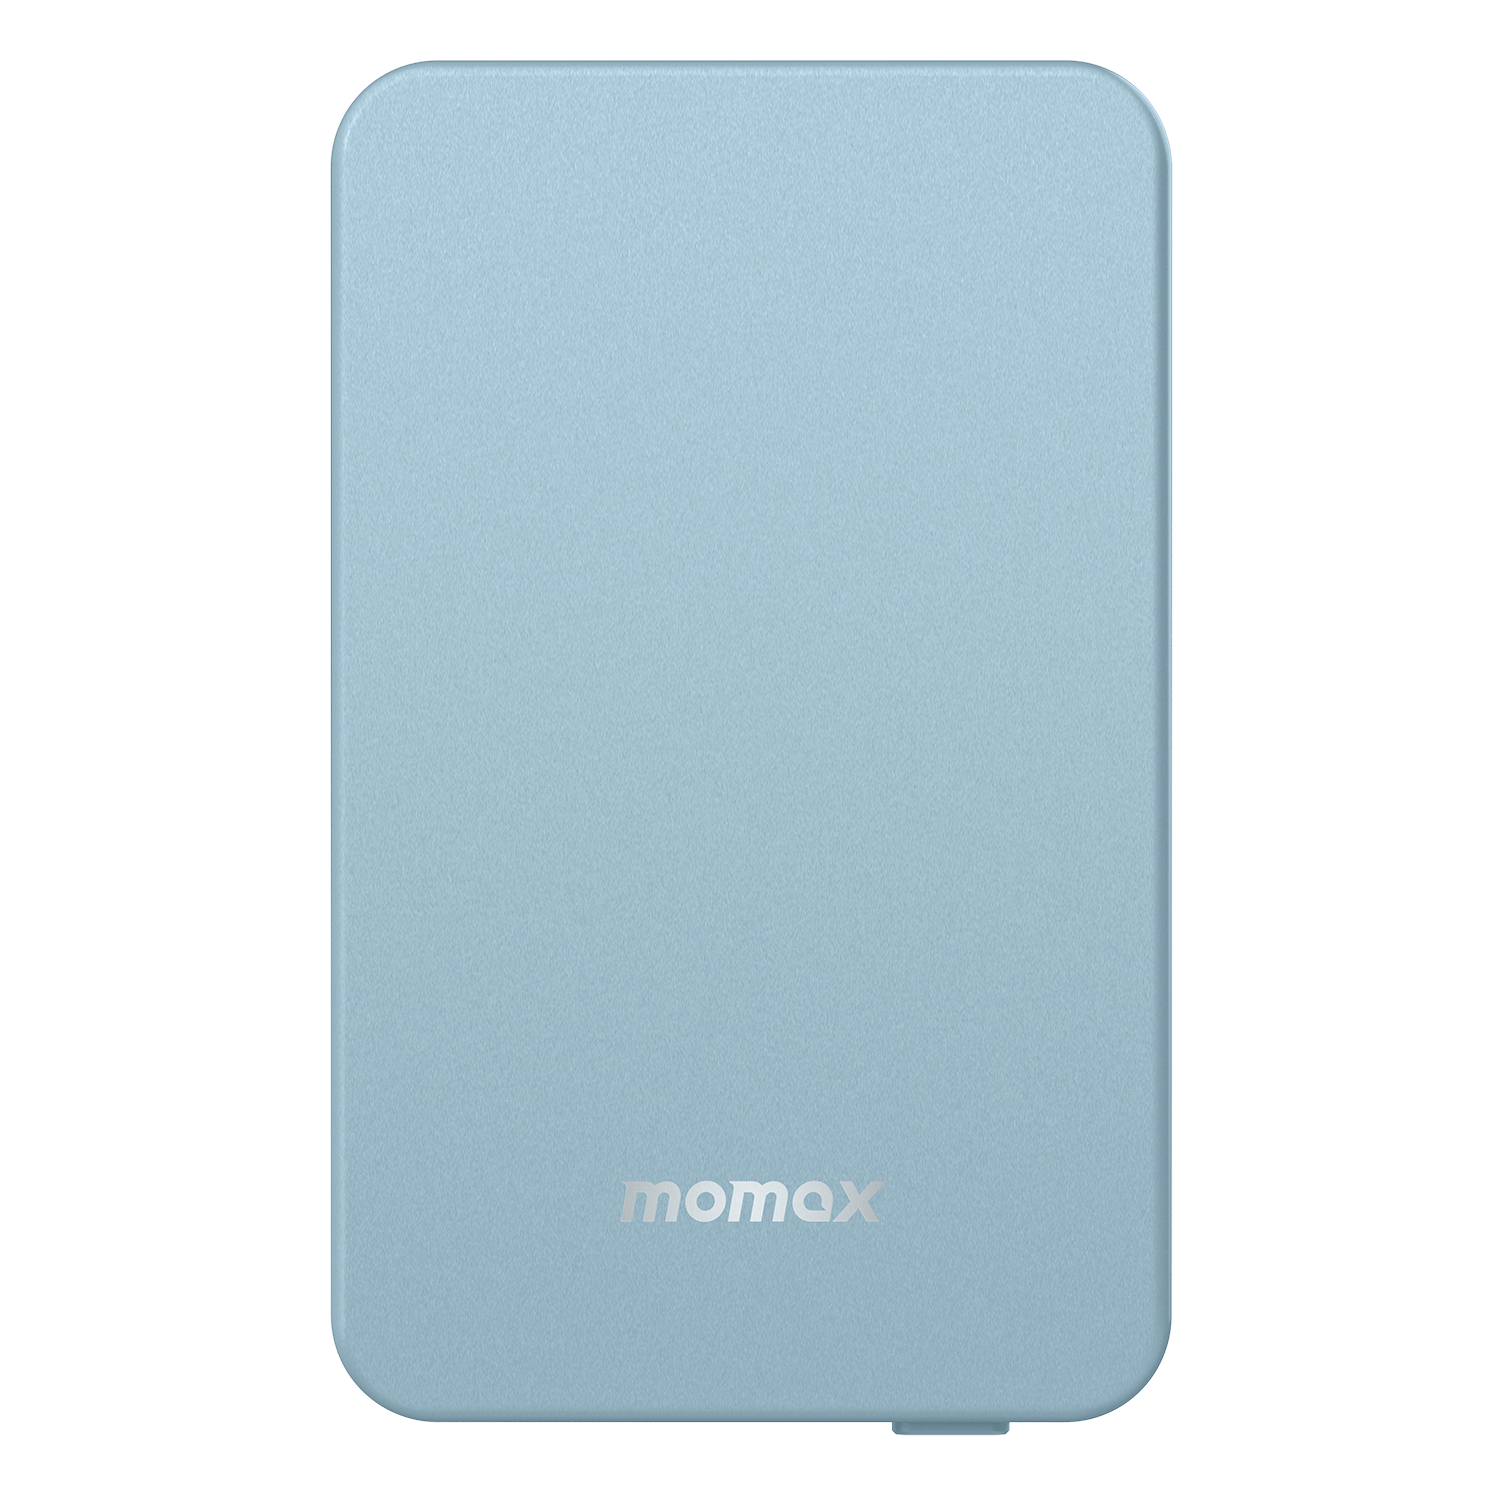 Momax Q.MAG Power 7 Wireless MagSafe Power Bank 10000mAh